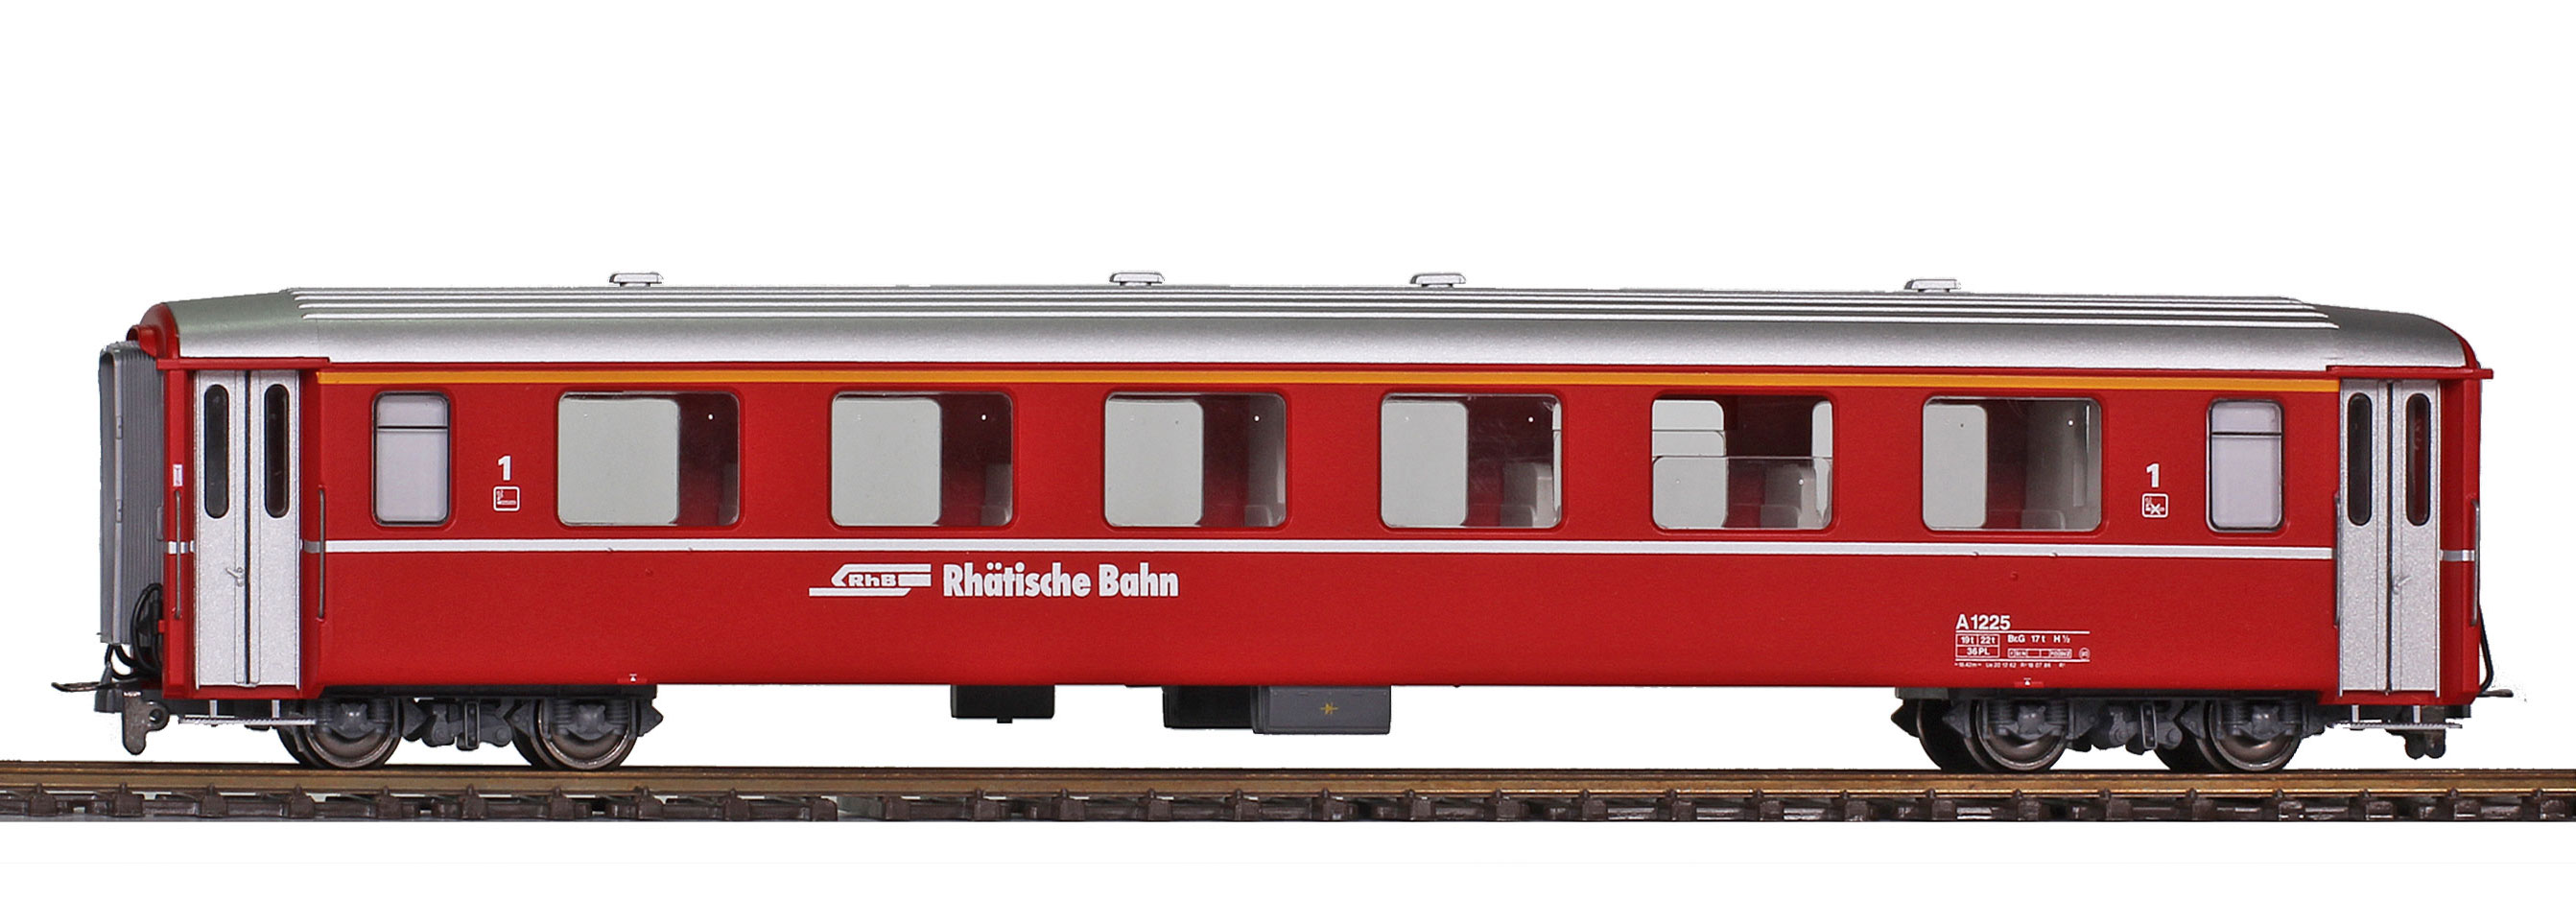 RhB A1243 EW I 1. Kl. rot im Zustand bis Ende der 1980iger Jahre mit silbernen Türgriffstangen